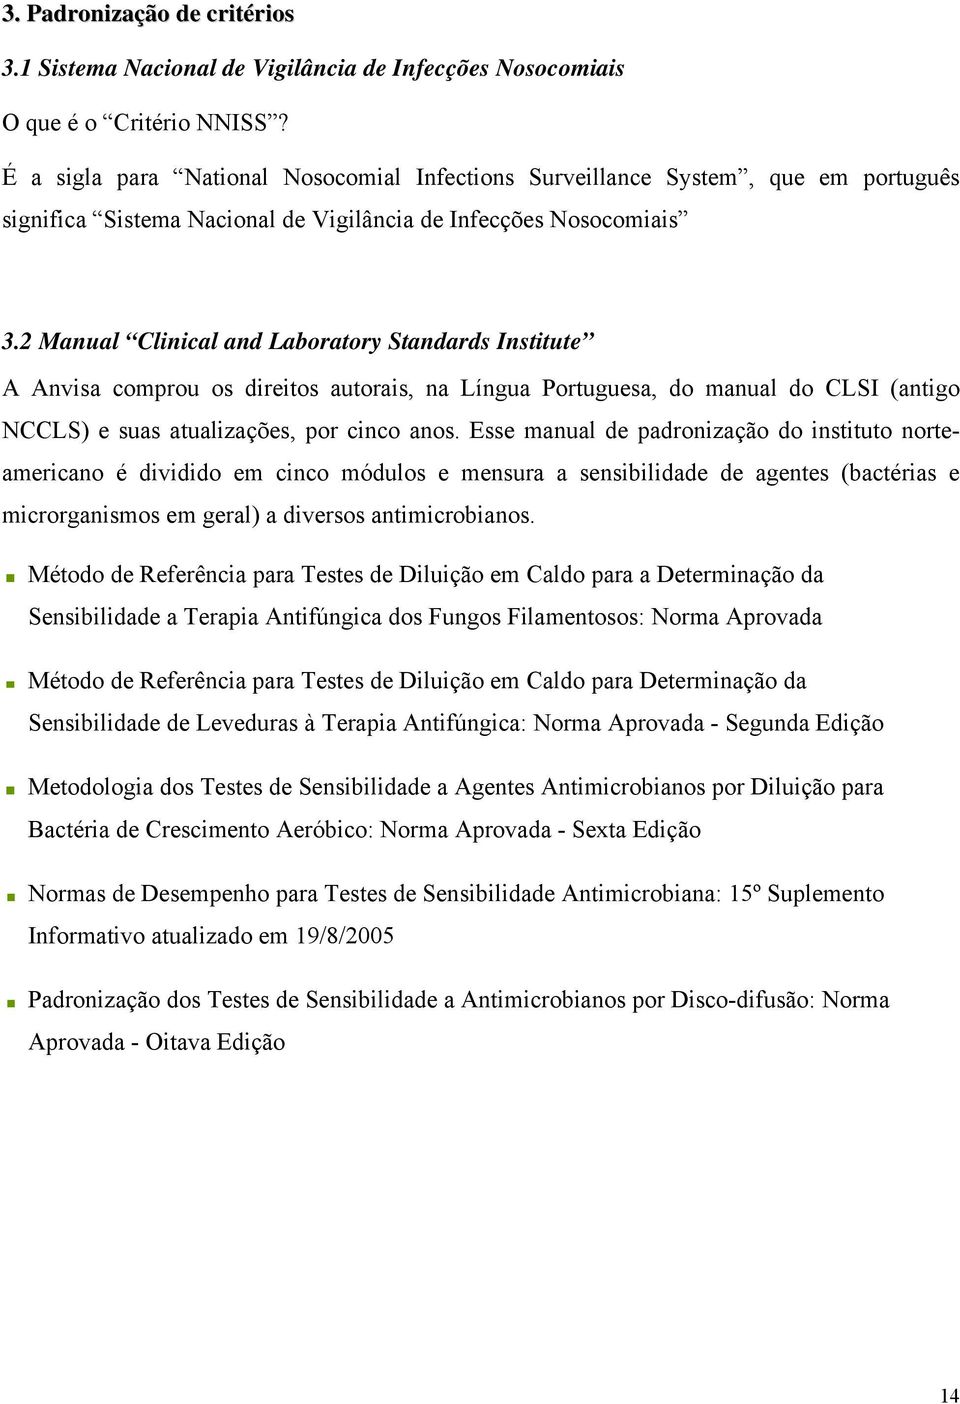 2 Manual Clinical and Laboratory Standards Institute A Anvisa comprou os direitos autorais, na Língua Portuguesa, do manual do CLSI (antigo NCCLS) e suas atualizações, por cinco anos.